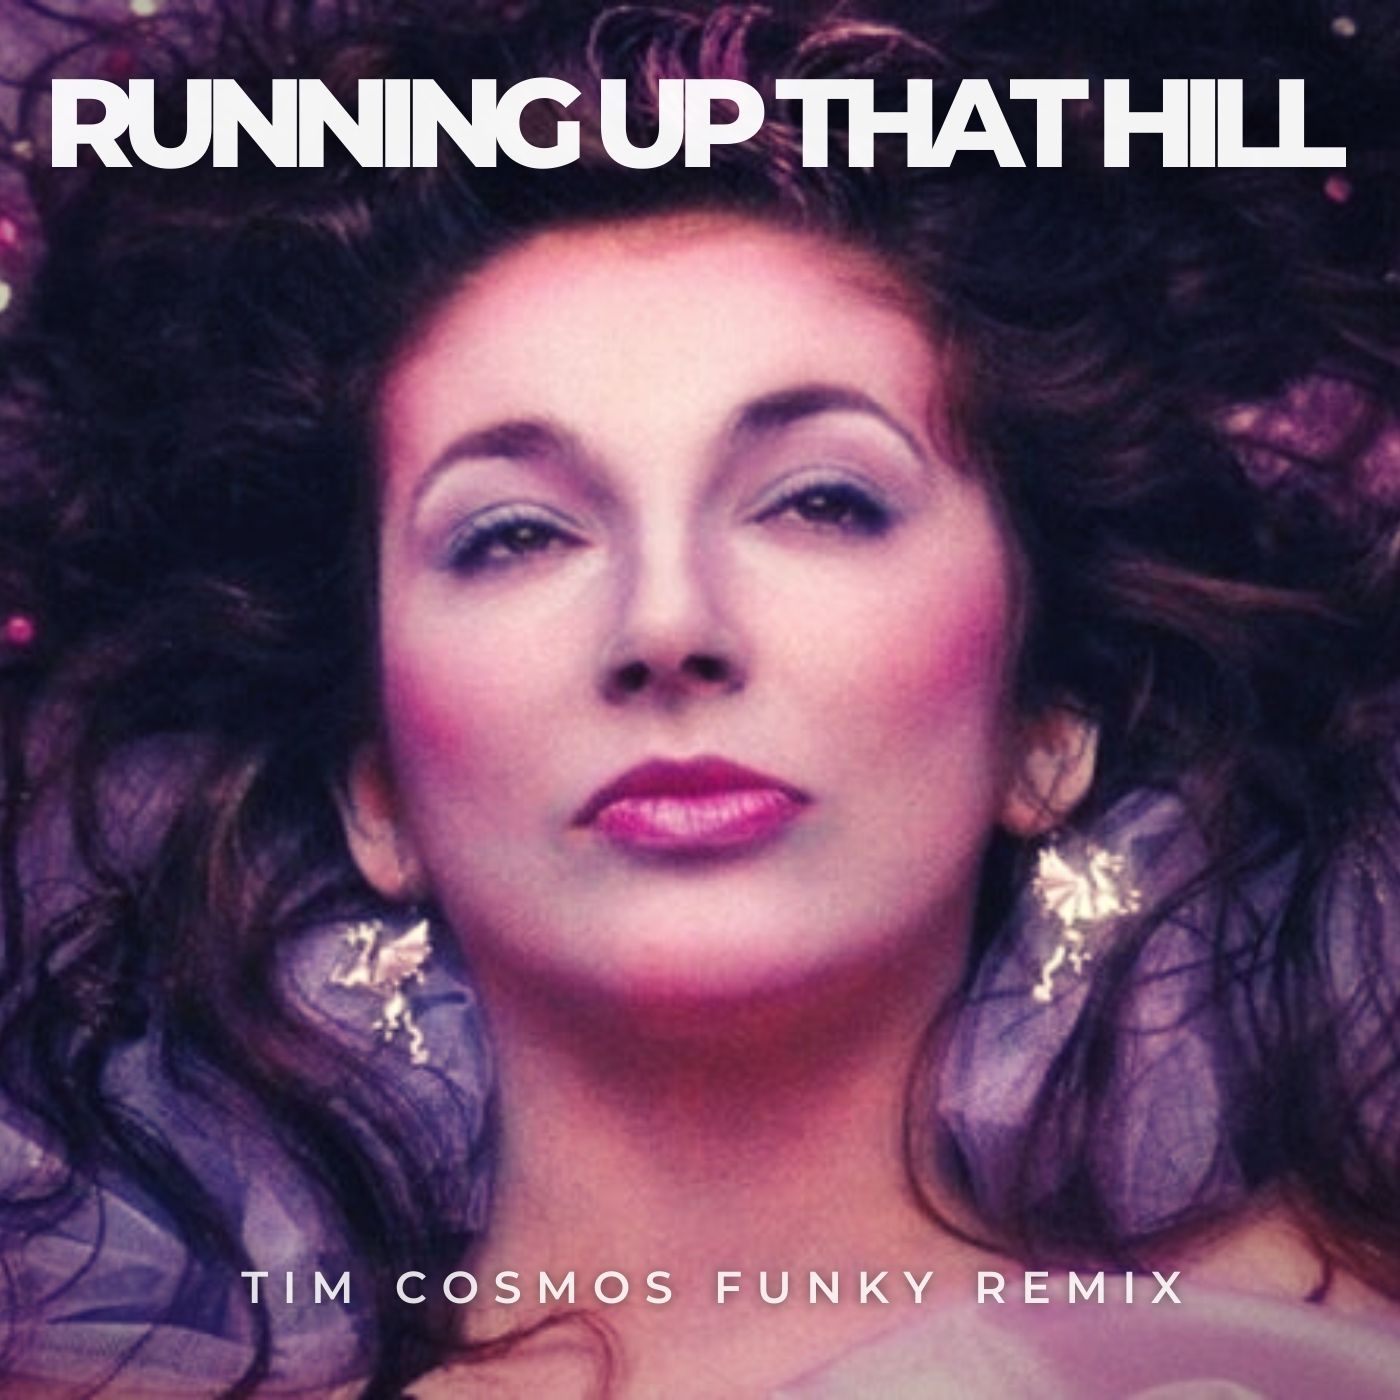 ডাউনলোড করুন Kate Bush - Running Up That Hill (Tim Cosmos Funky Remix) [HYPEDDIT #01 NUDISCO CHART]